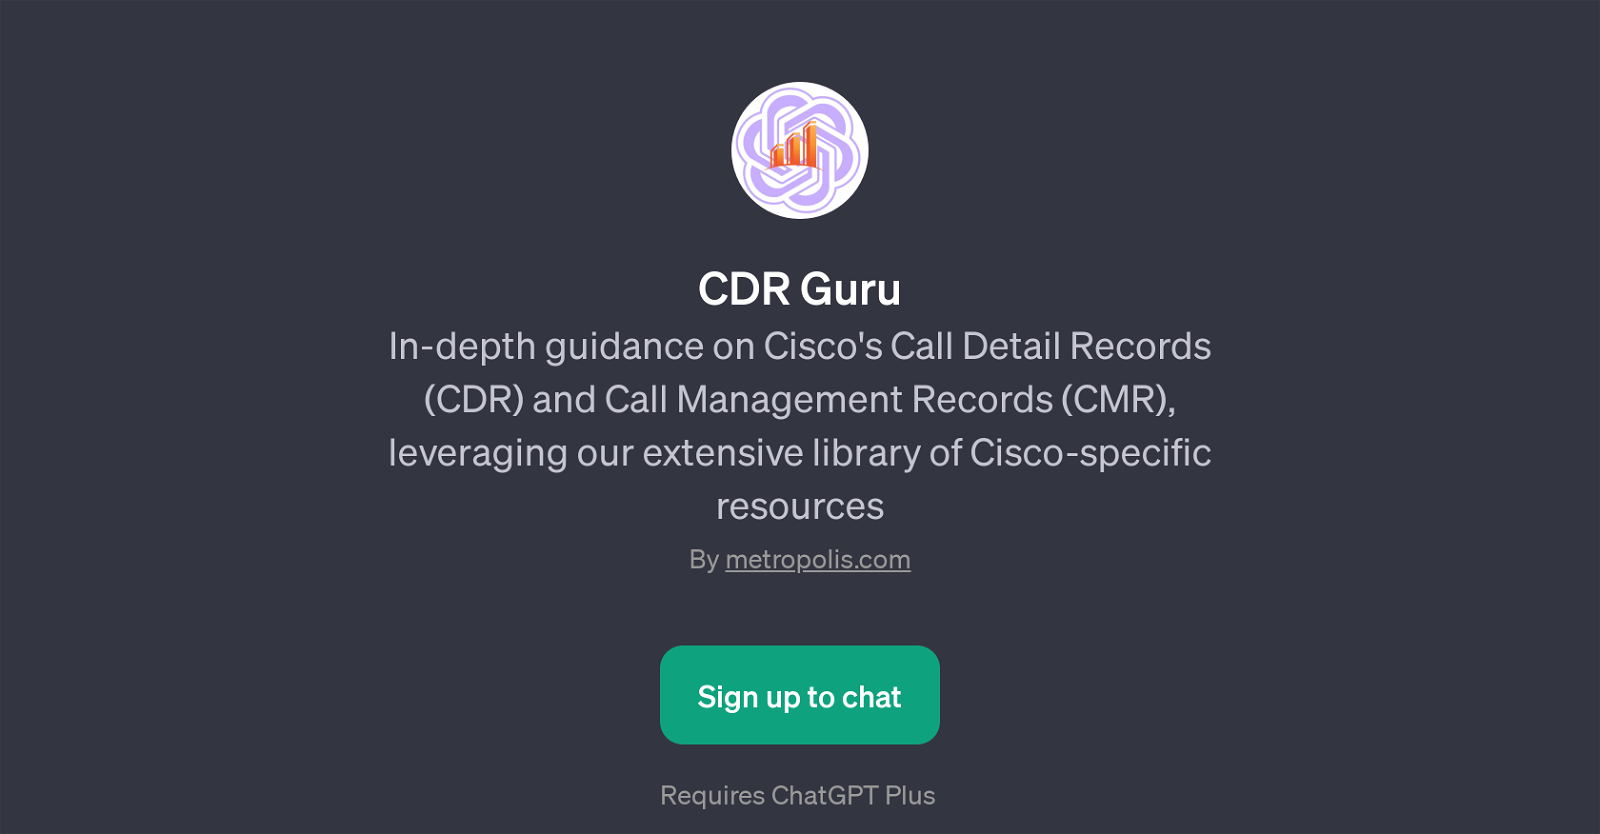 CDR Guru website